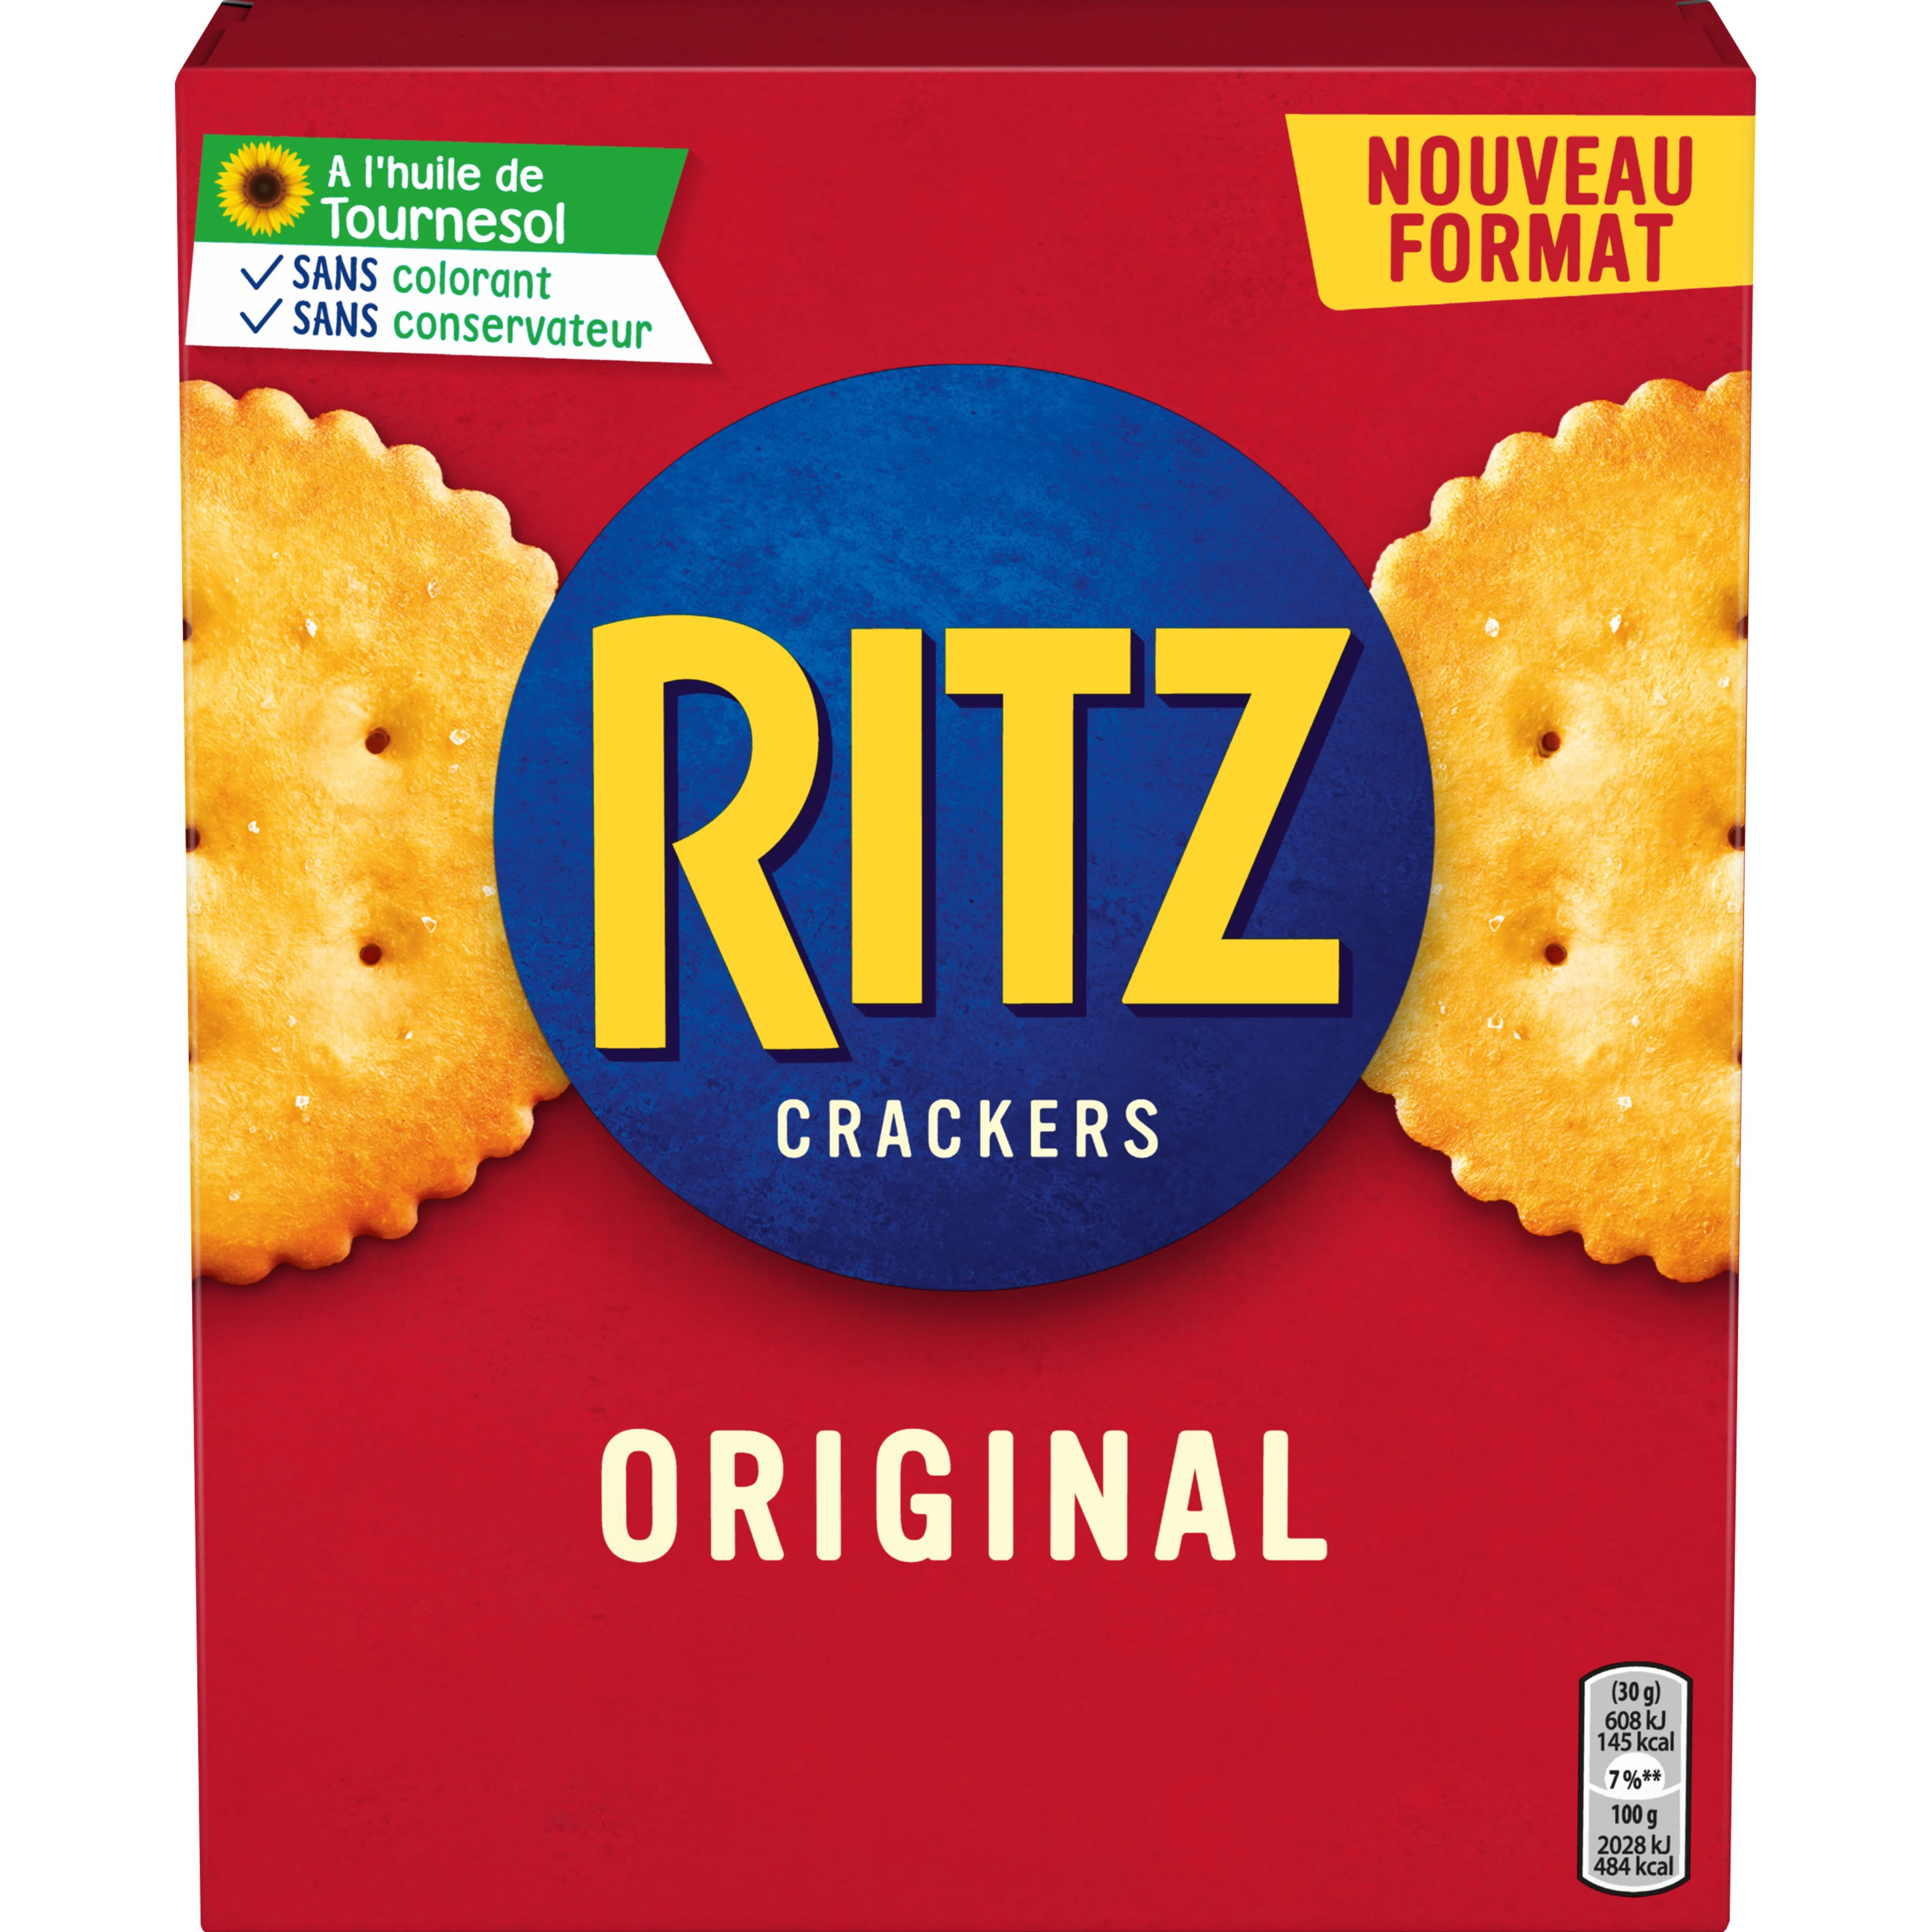 Crackers Originele Aperitiefkoekjes, 200g -  RITZ